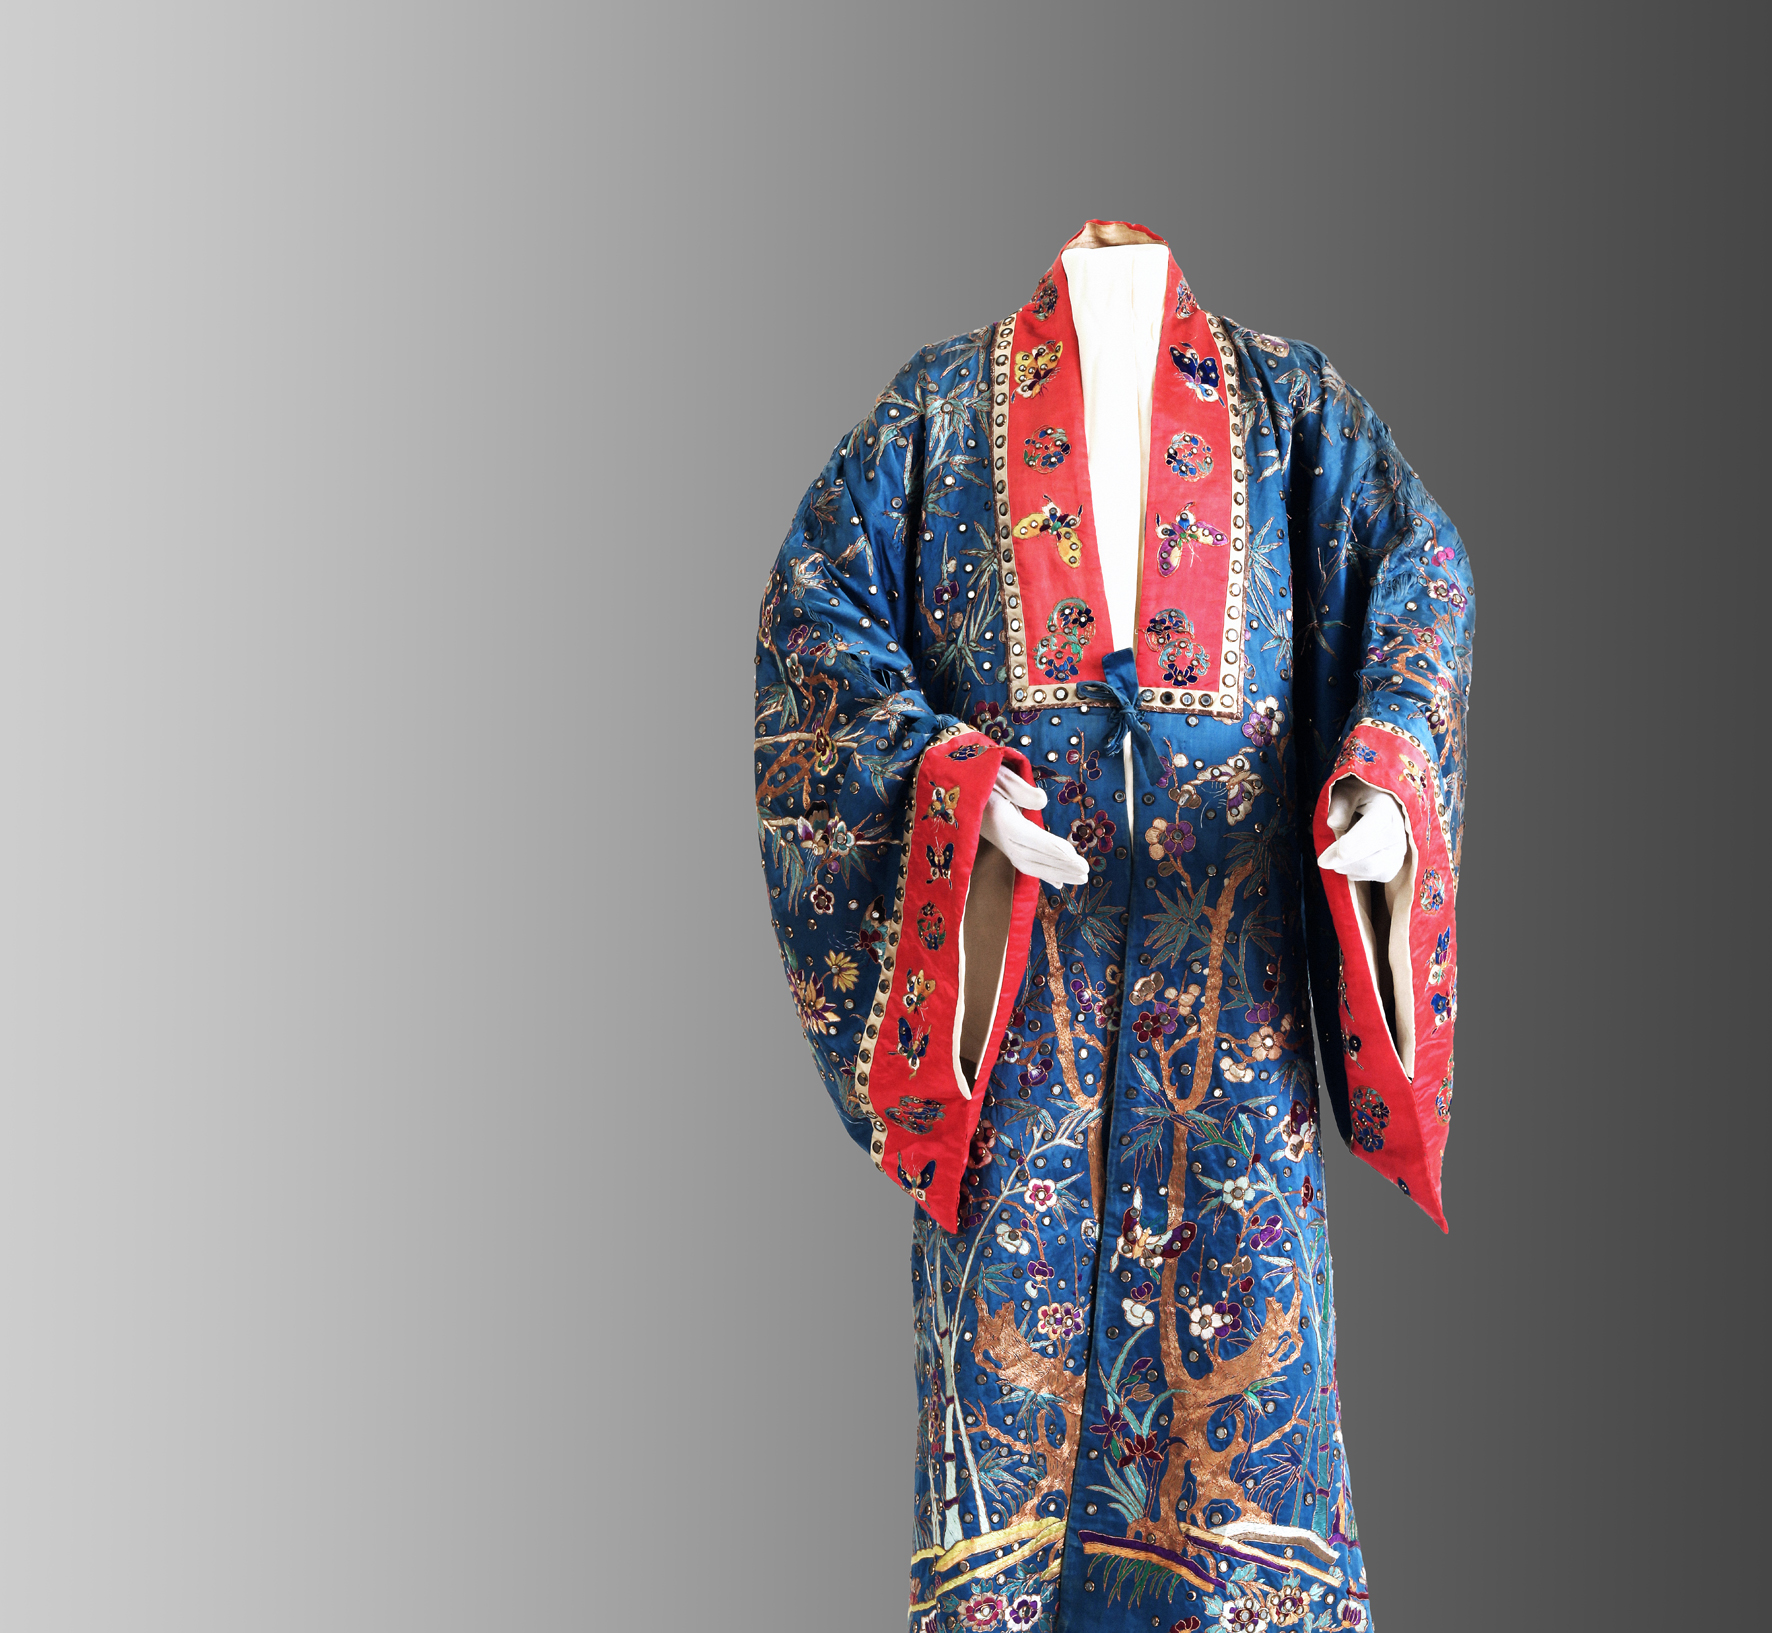 Kimono per l'opera 'Iris', dal Museo Enrico Caruso